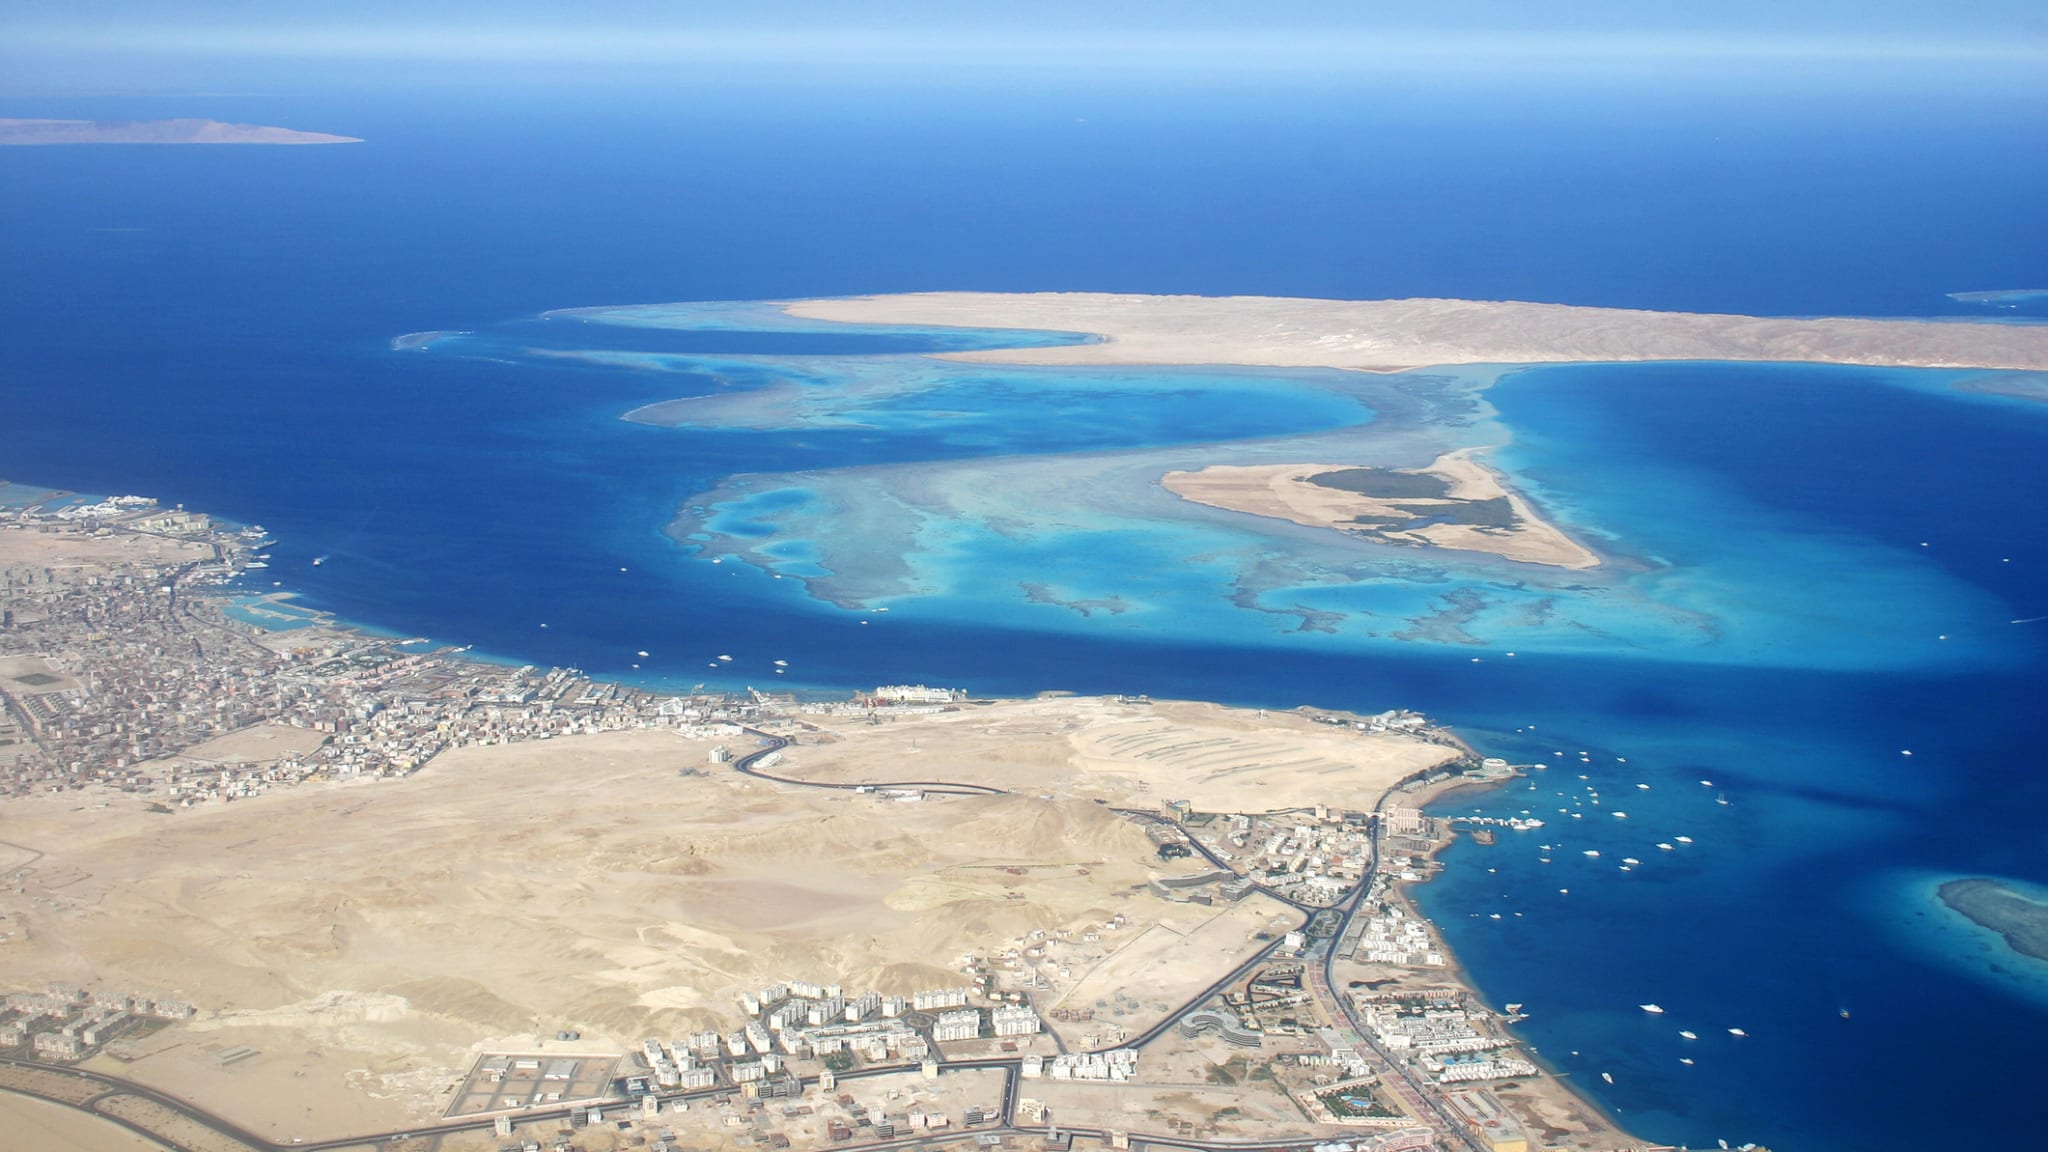 Luftaufnahme der Giftun Inseln vor der Küste von Hurghada, Ägypten © iStock.com/Wafue